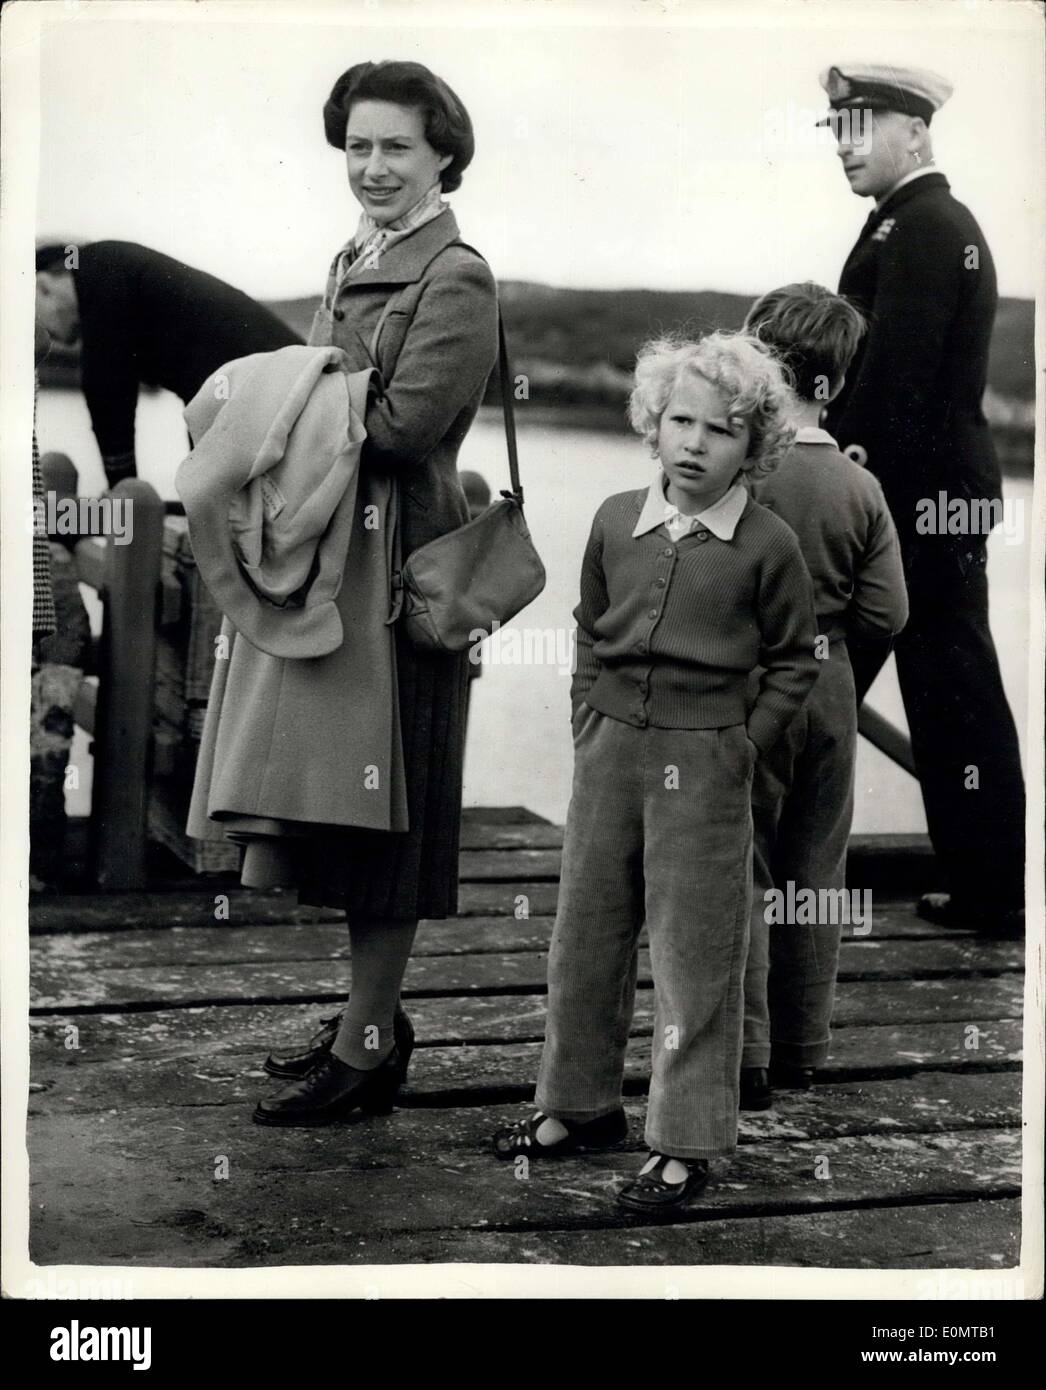 Agosto 16, 1956 - pantaloni in velluto a coste è la principessa Anna vestito di compleanno: indossare pantaloni in velluto a coste, una rosa cardigan, e sandali, Princess Anne ha trascorso il suo sesto compleanno di ieri con il suo fratello il principe Carlo e la principessa Margaret, su South Uist, una delle Western Isles, al largo della Scozia. Mentre la regina e il Duca di Edimburgo sono stati touring l'isola, Princess Anne, il principe Carlo e la principessa Margaret è andato per un pranzo a picnic sulla spiaggia Foto Stock